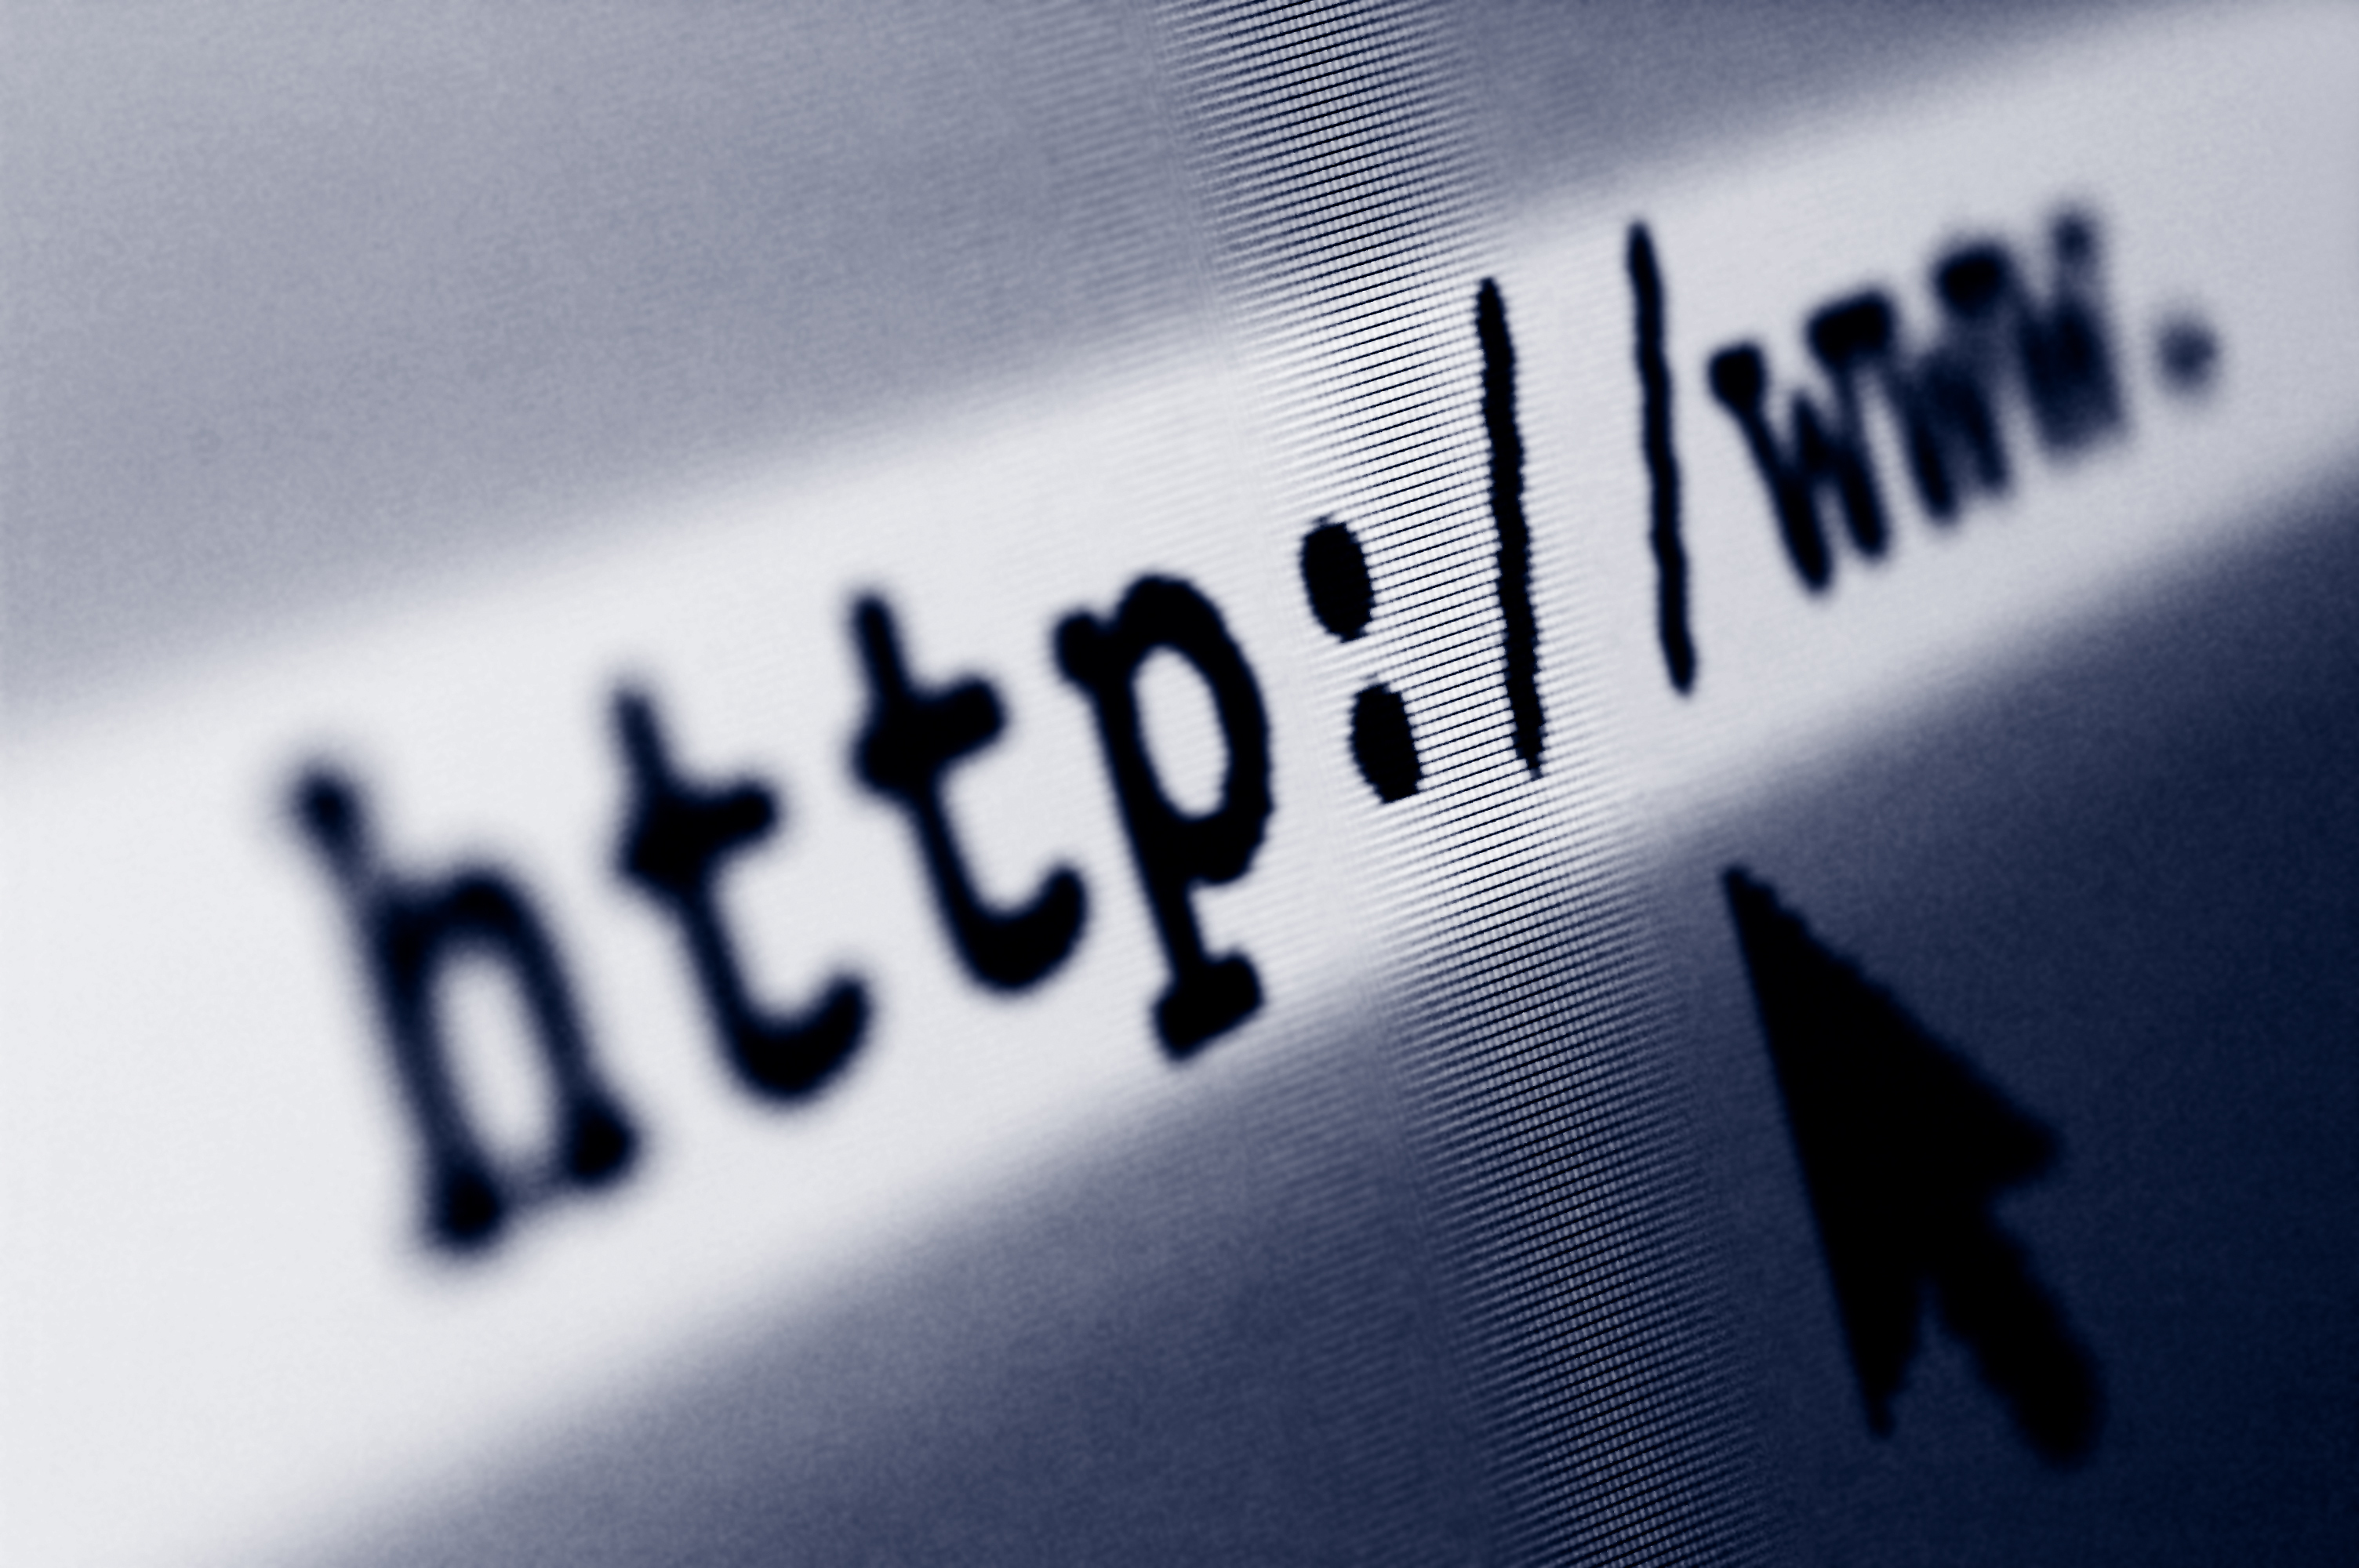 Piratage : ce site de torrents a changé d'adresse près de 40 fois pour échapper aux autorités